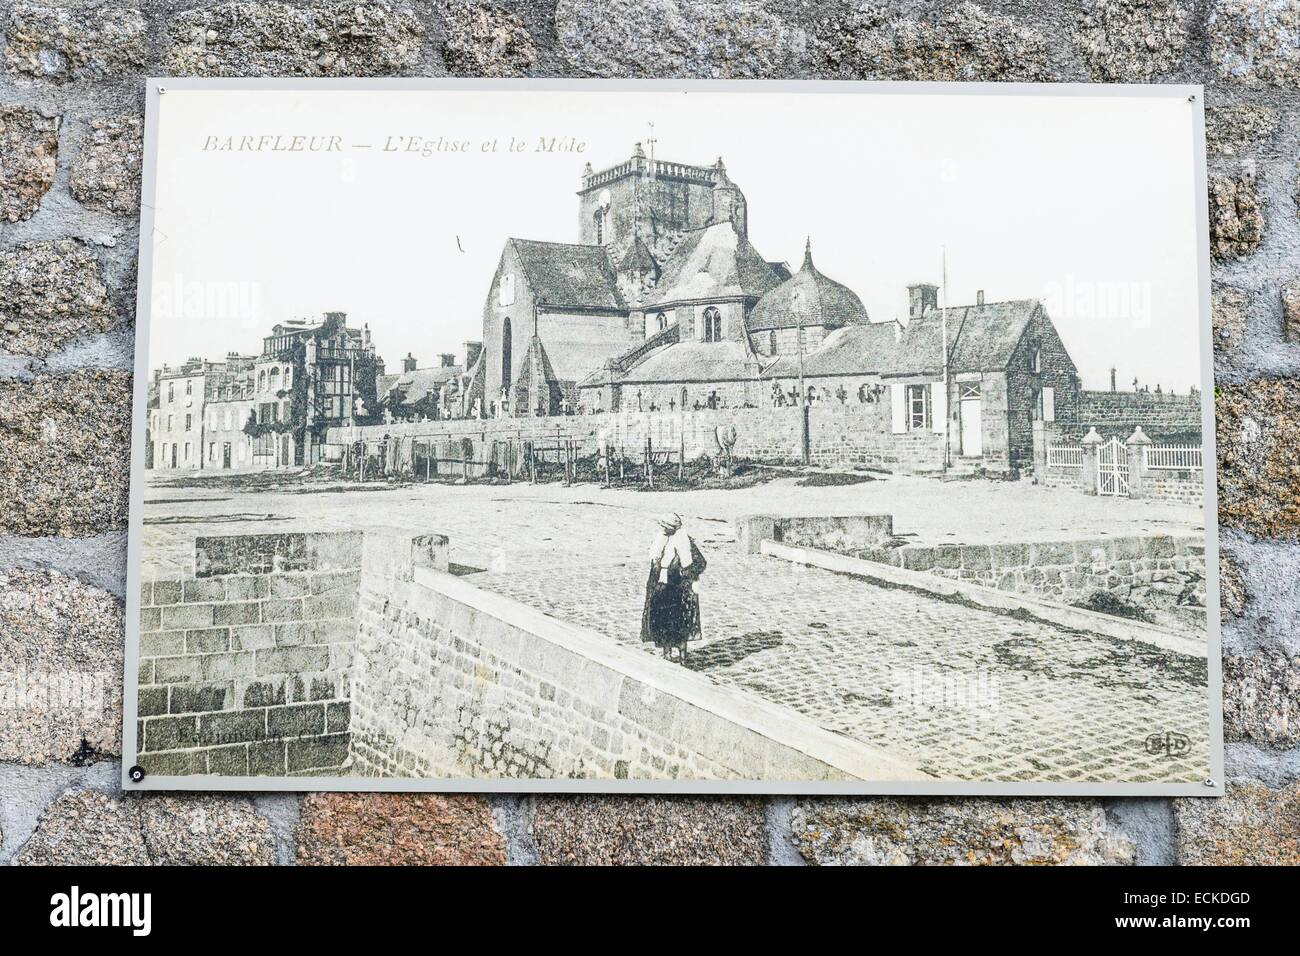 Manche, Cotentin, Frankreich, Barfleur, mit der Bezeichnung Les Plus Beaux Dörfer de France (The Most Beautiful Dörfer Frankreichs), Archivierung Fotos entlang des Hafens Stockfoto